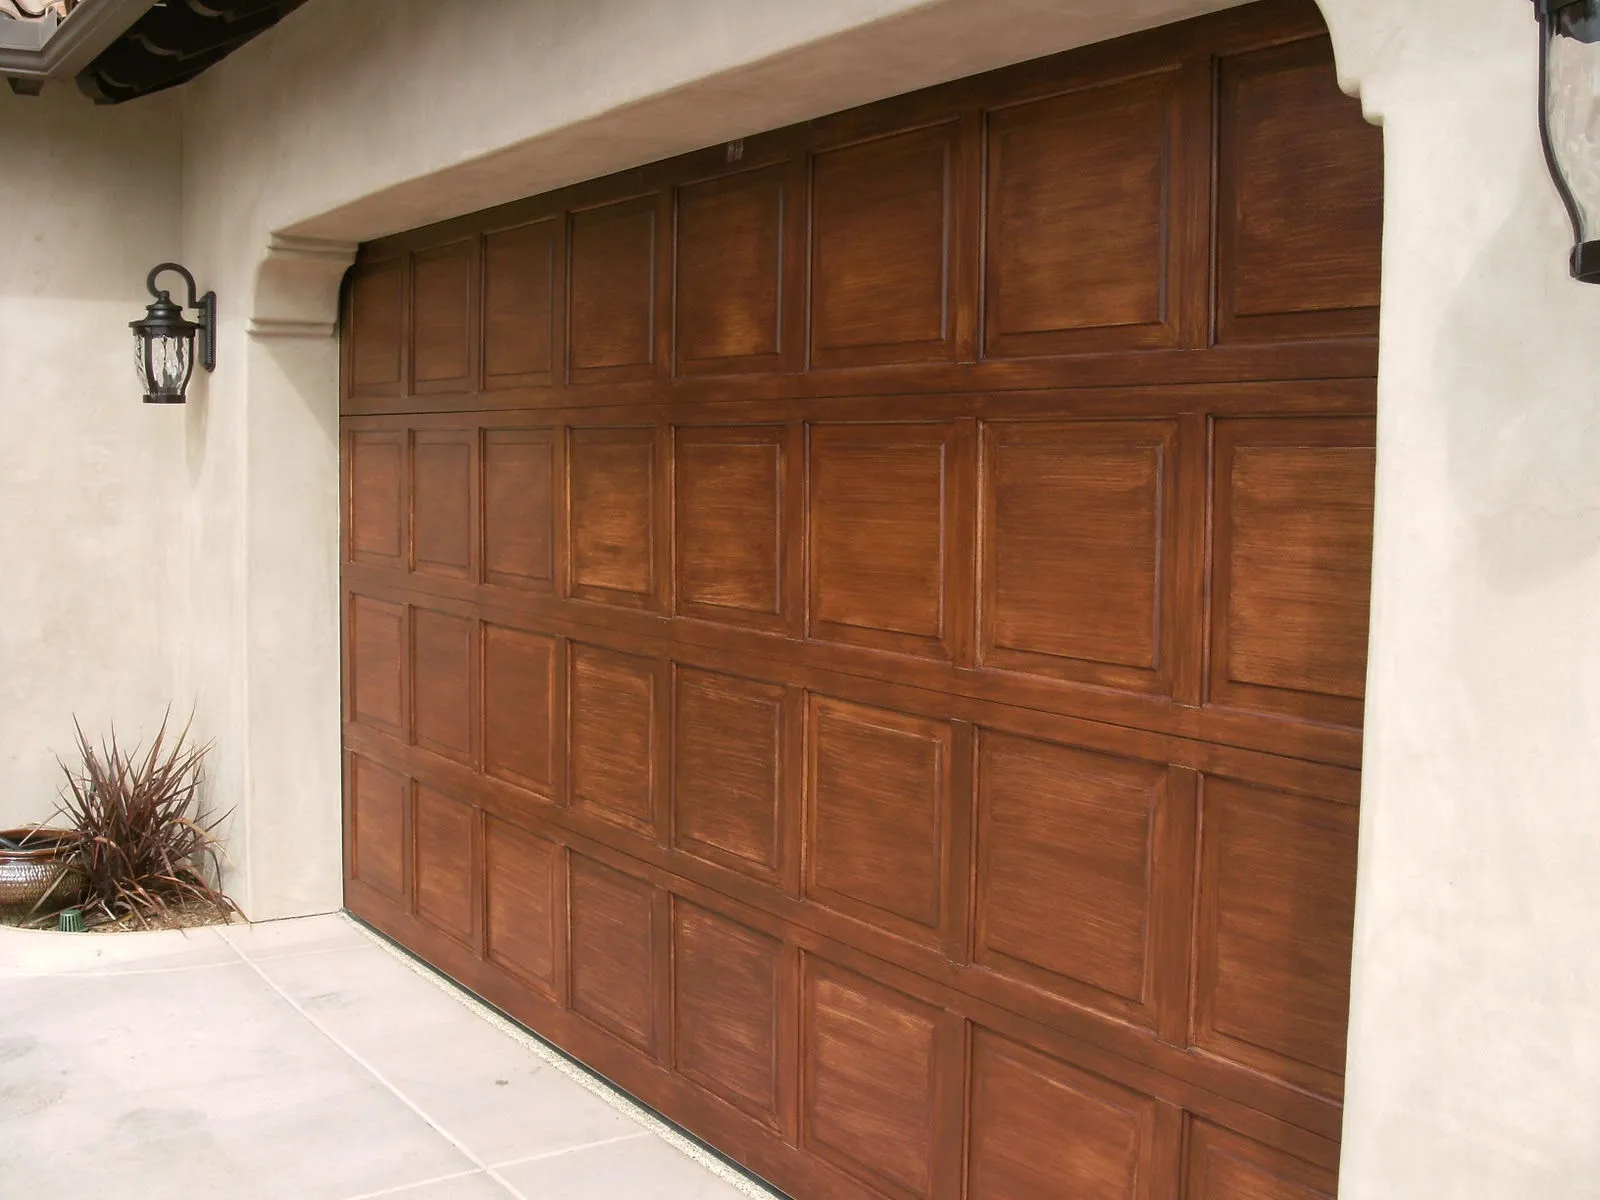 replacement garage door